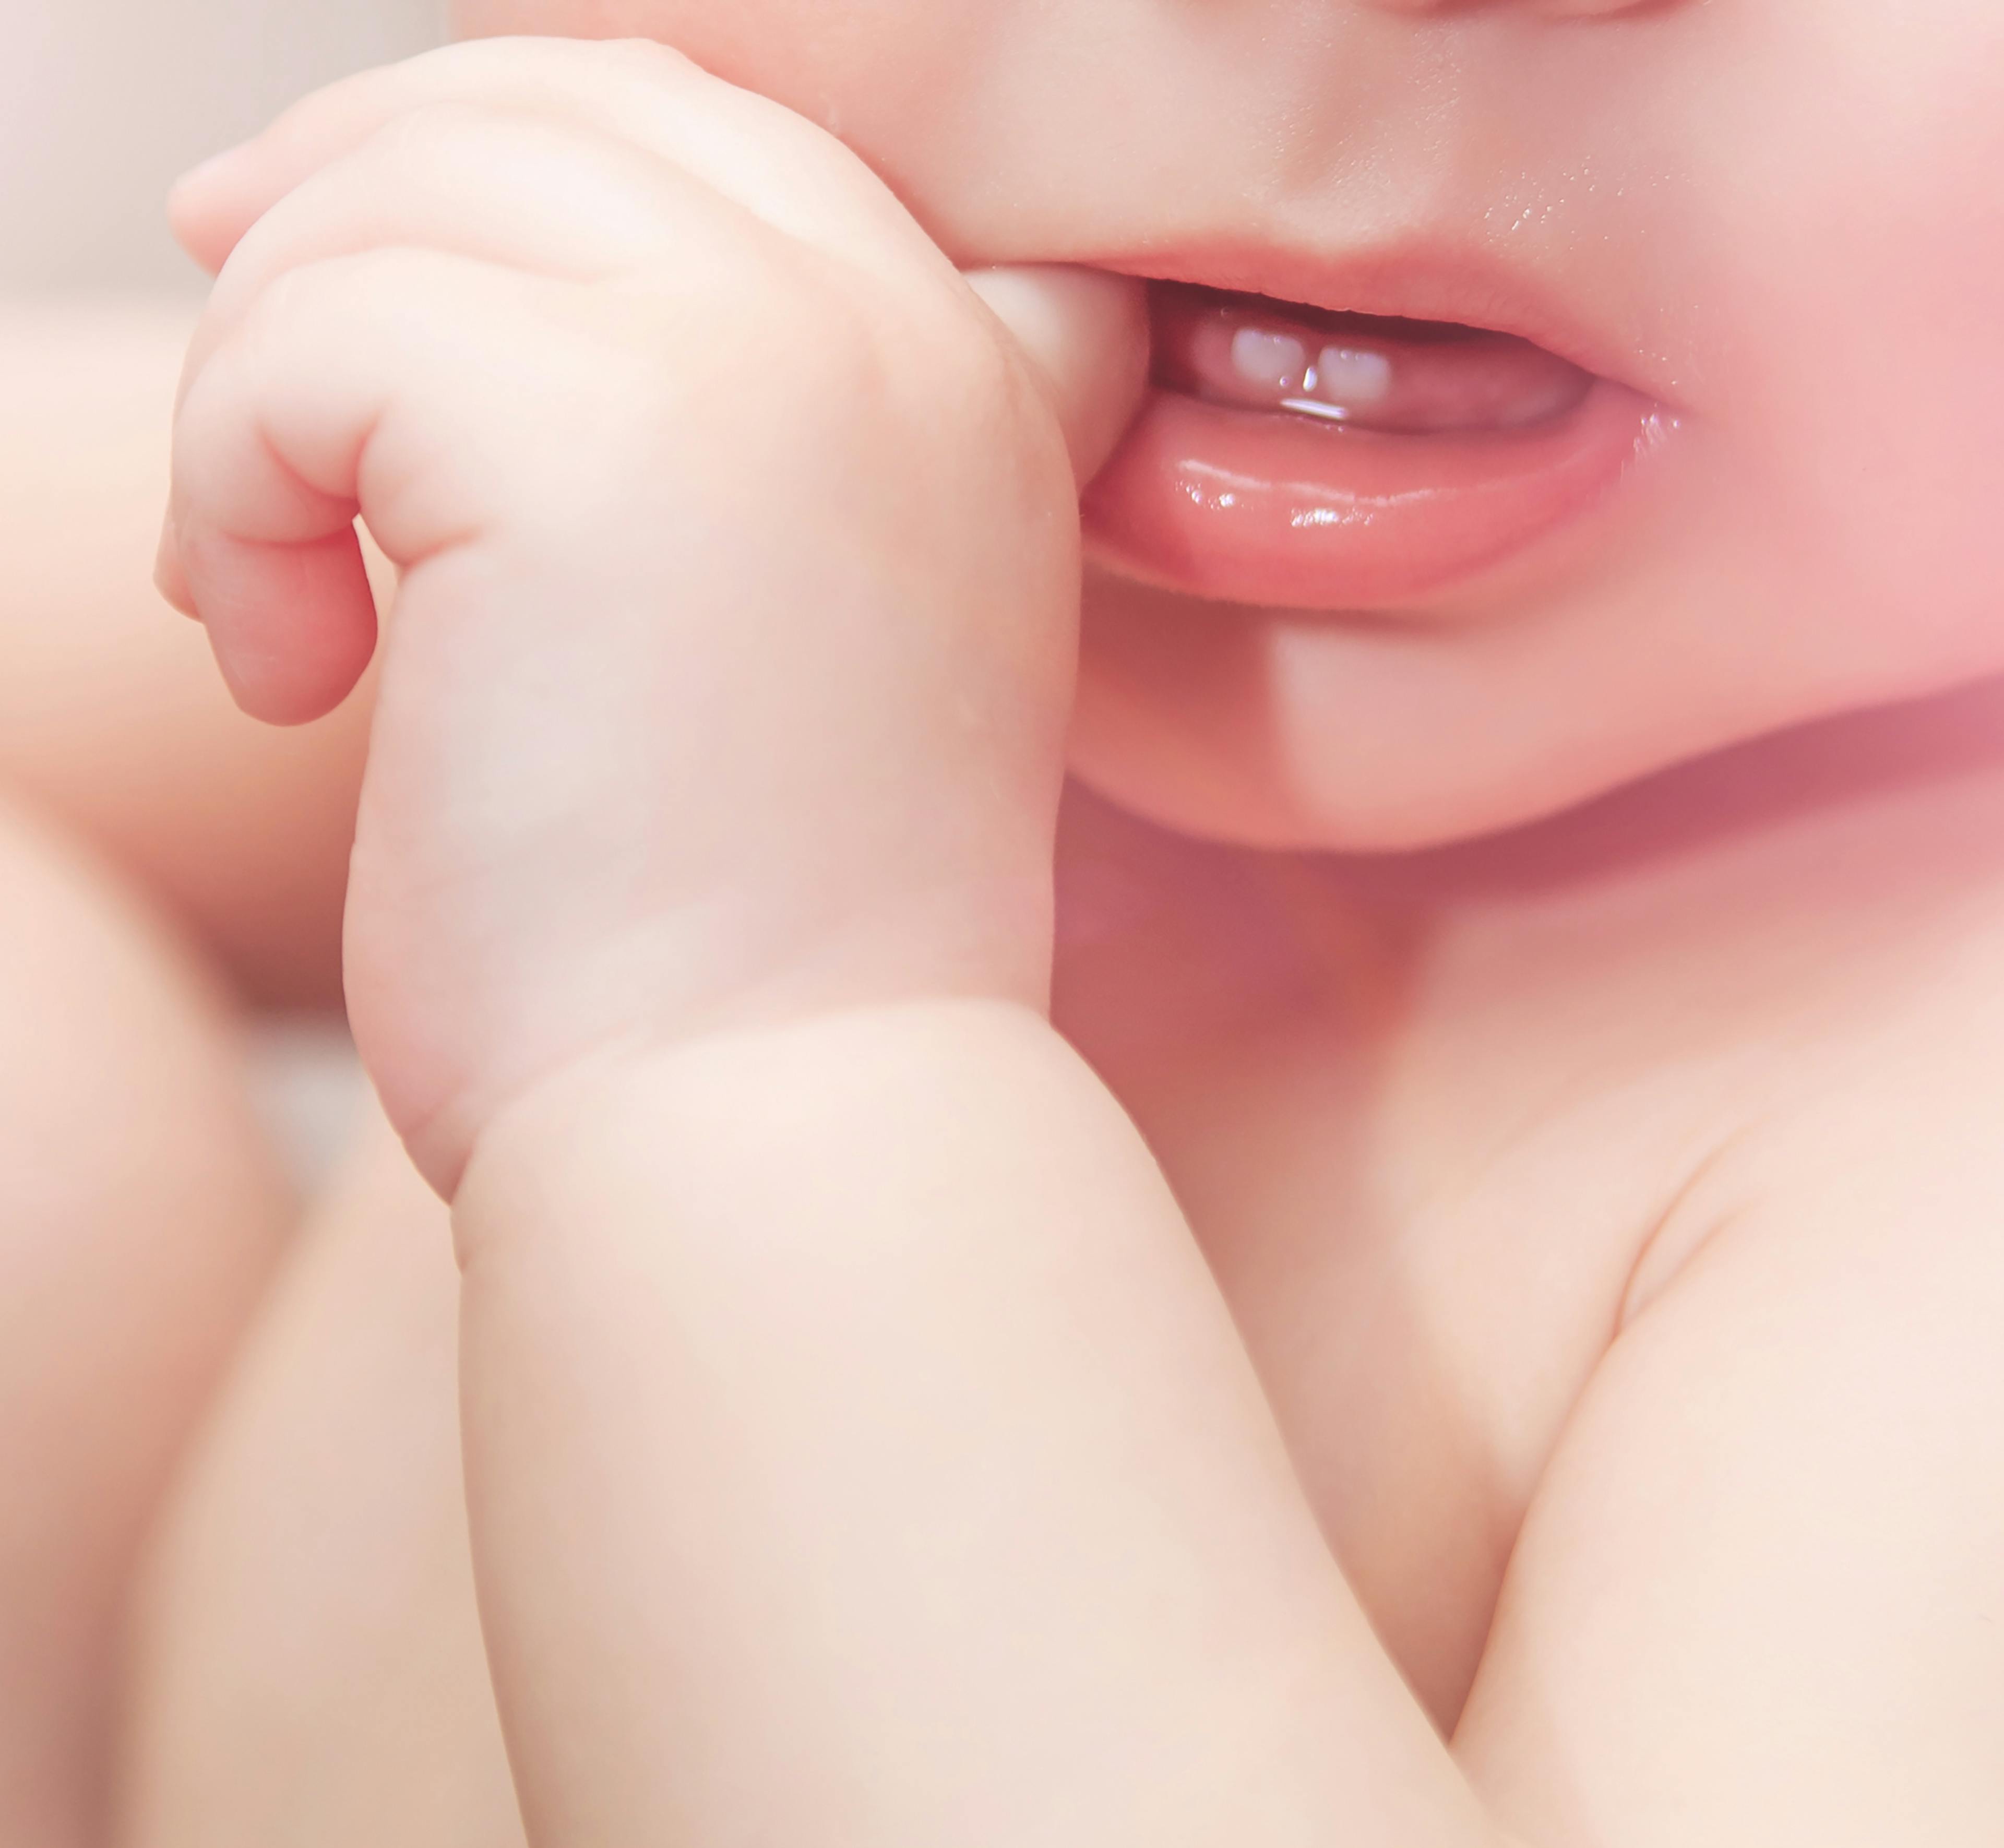 Bébé grognon, joues et fesses rouges, c'est la poussée dentaire?